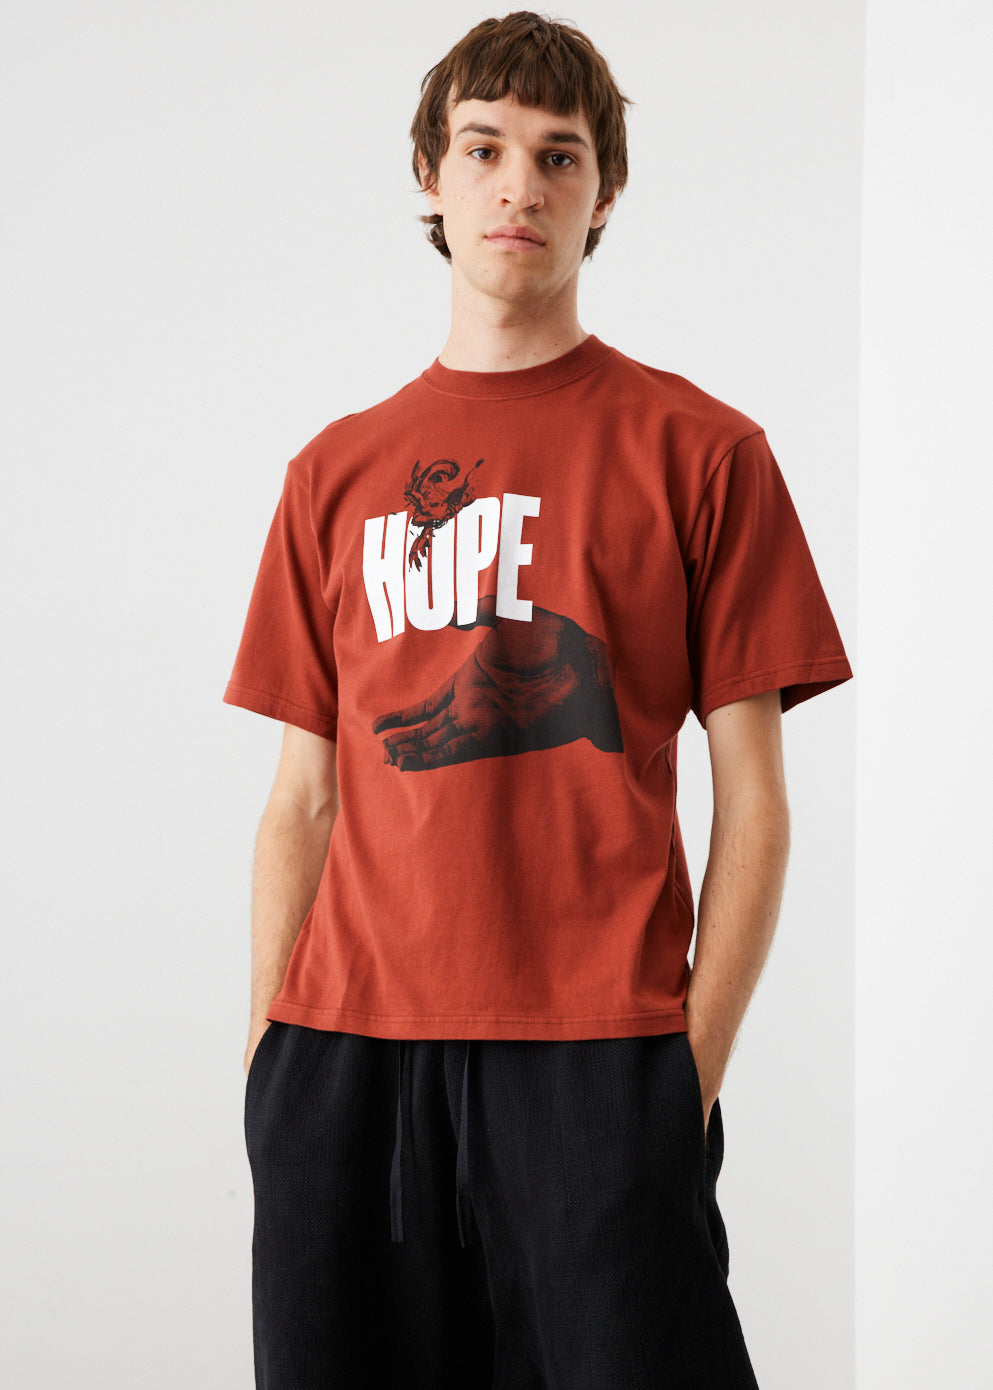 Hope Hands T-Shirt